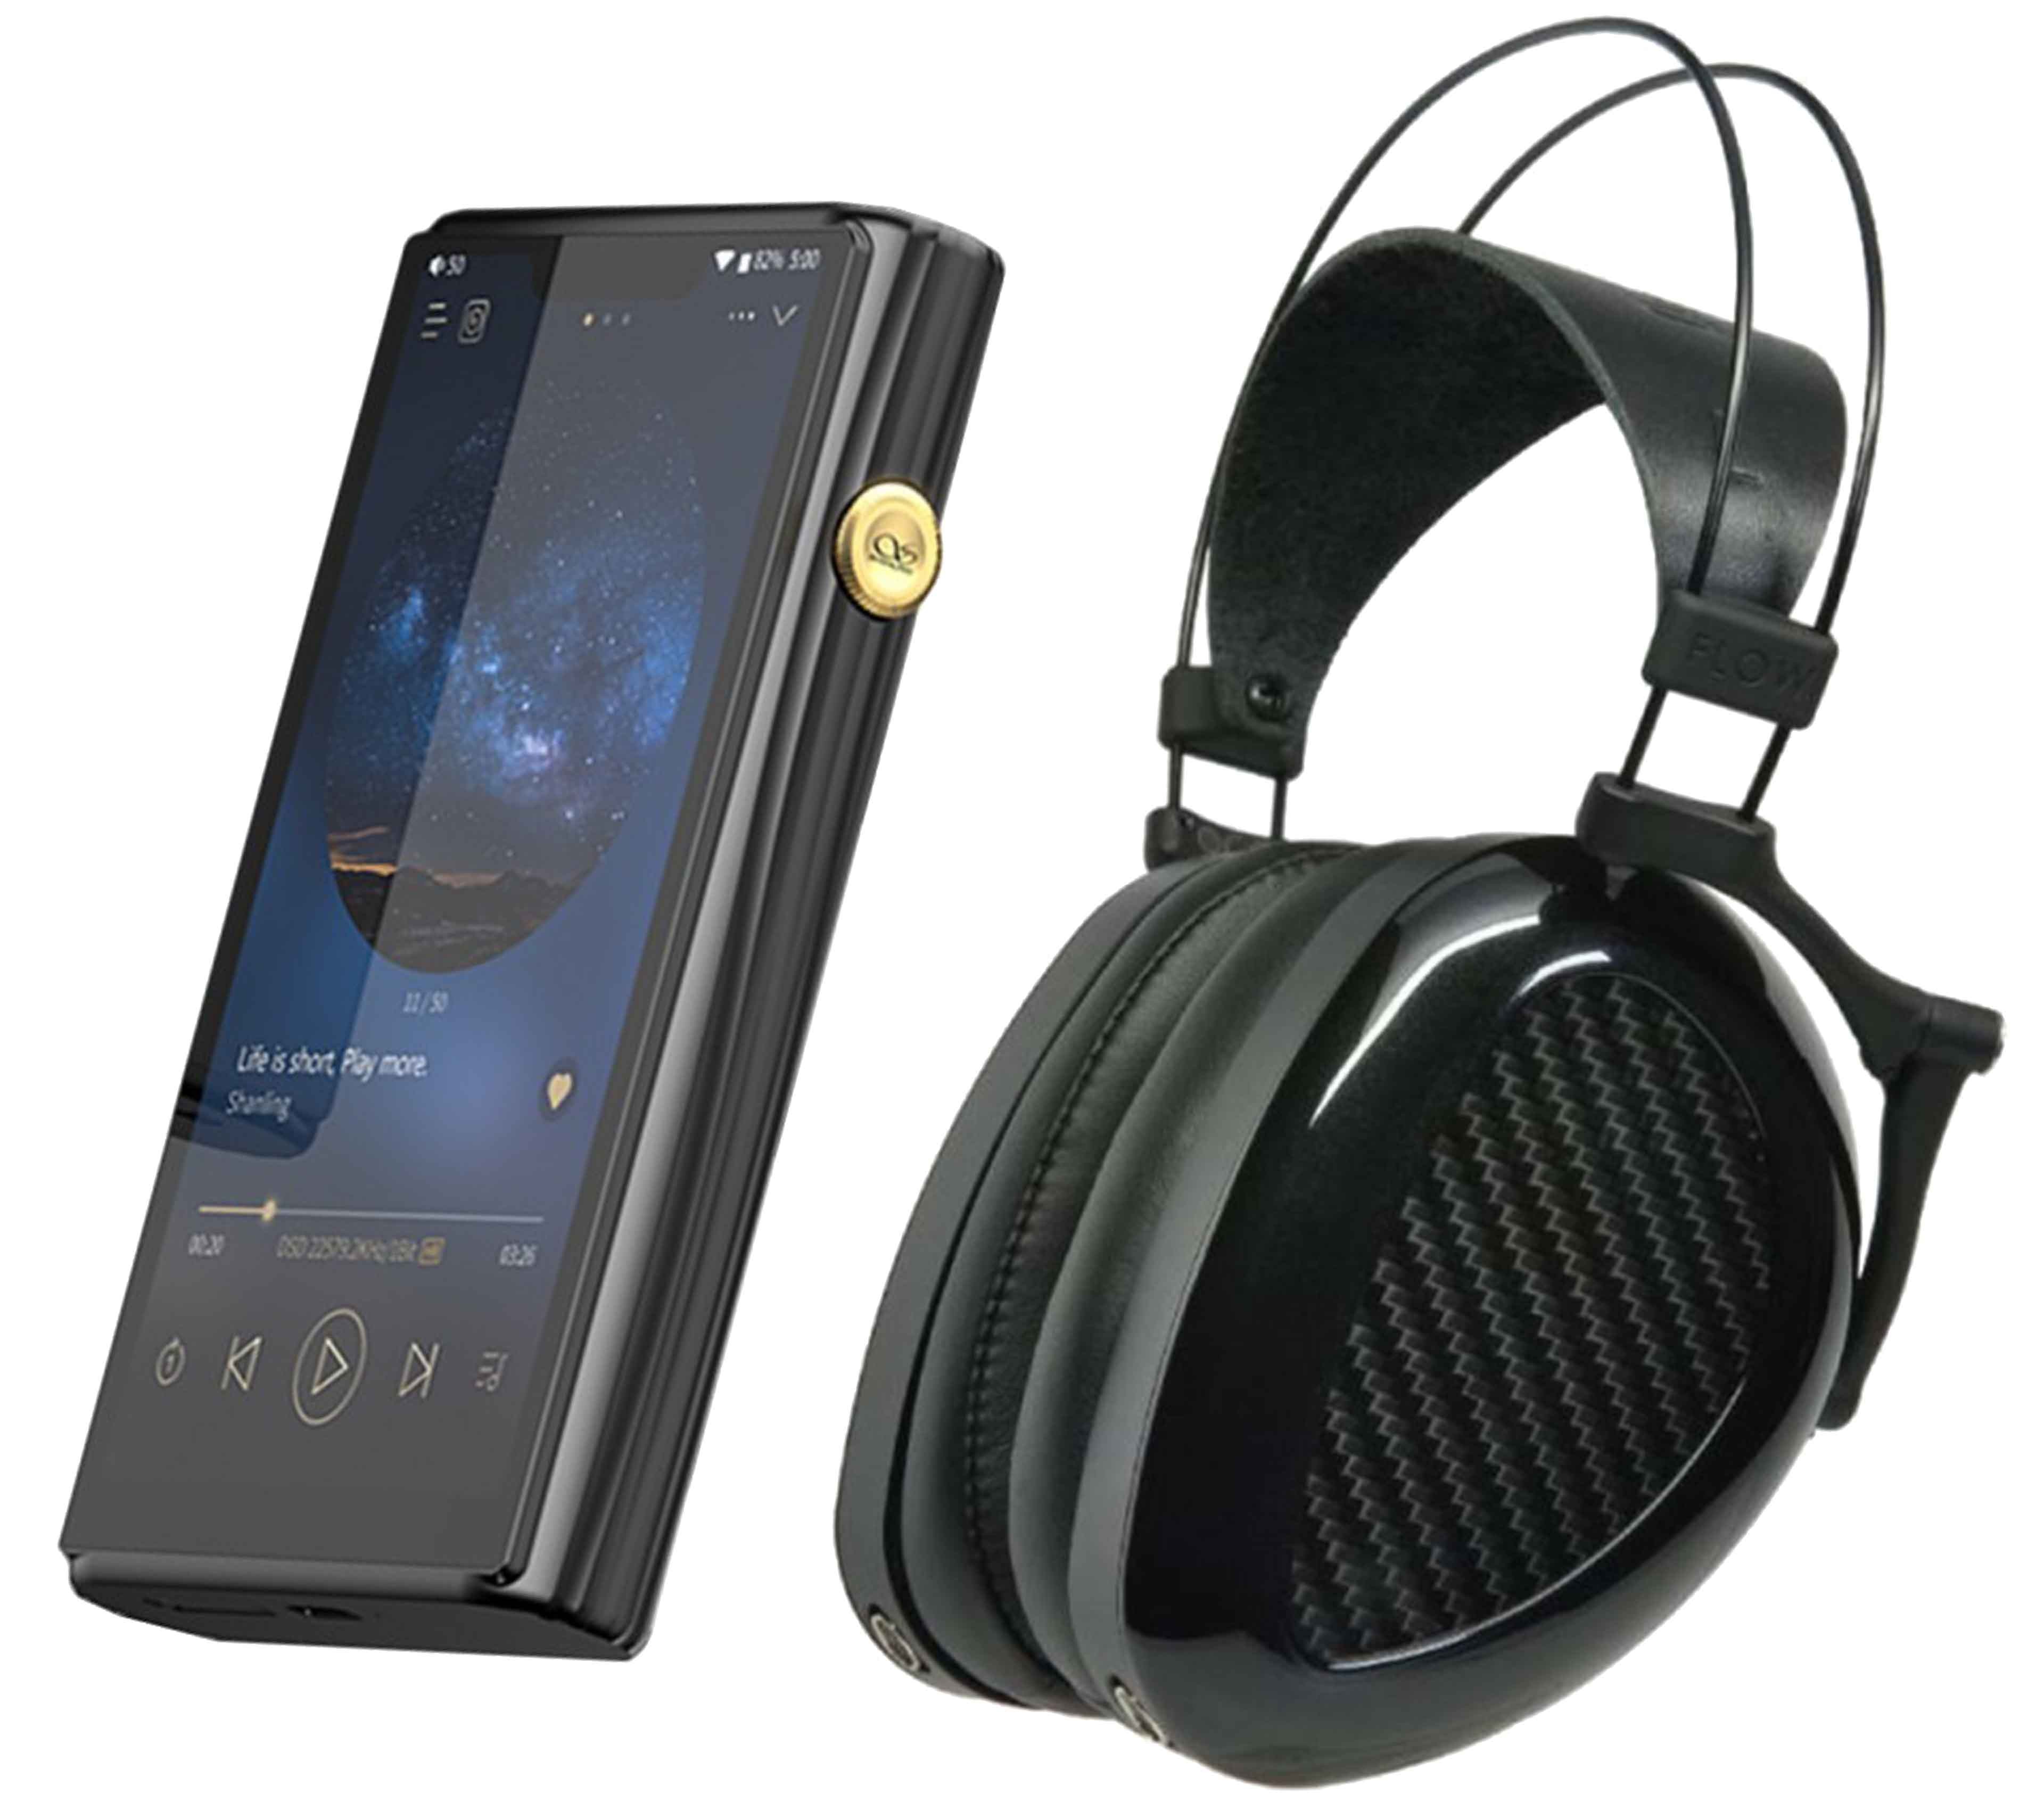 Pack Shanling M9 Plus DAP + Dan Clark Audio Aeon 2 Black Headphones